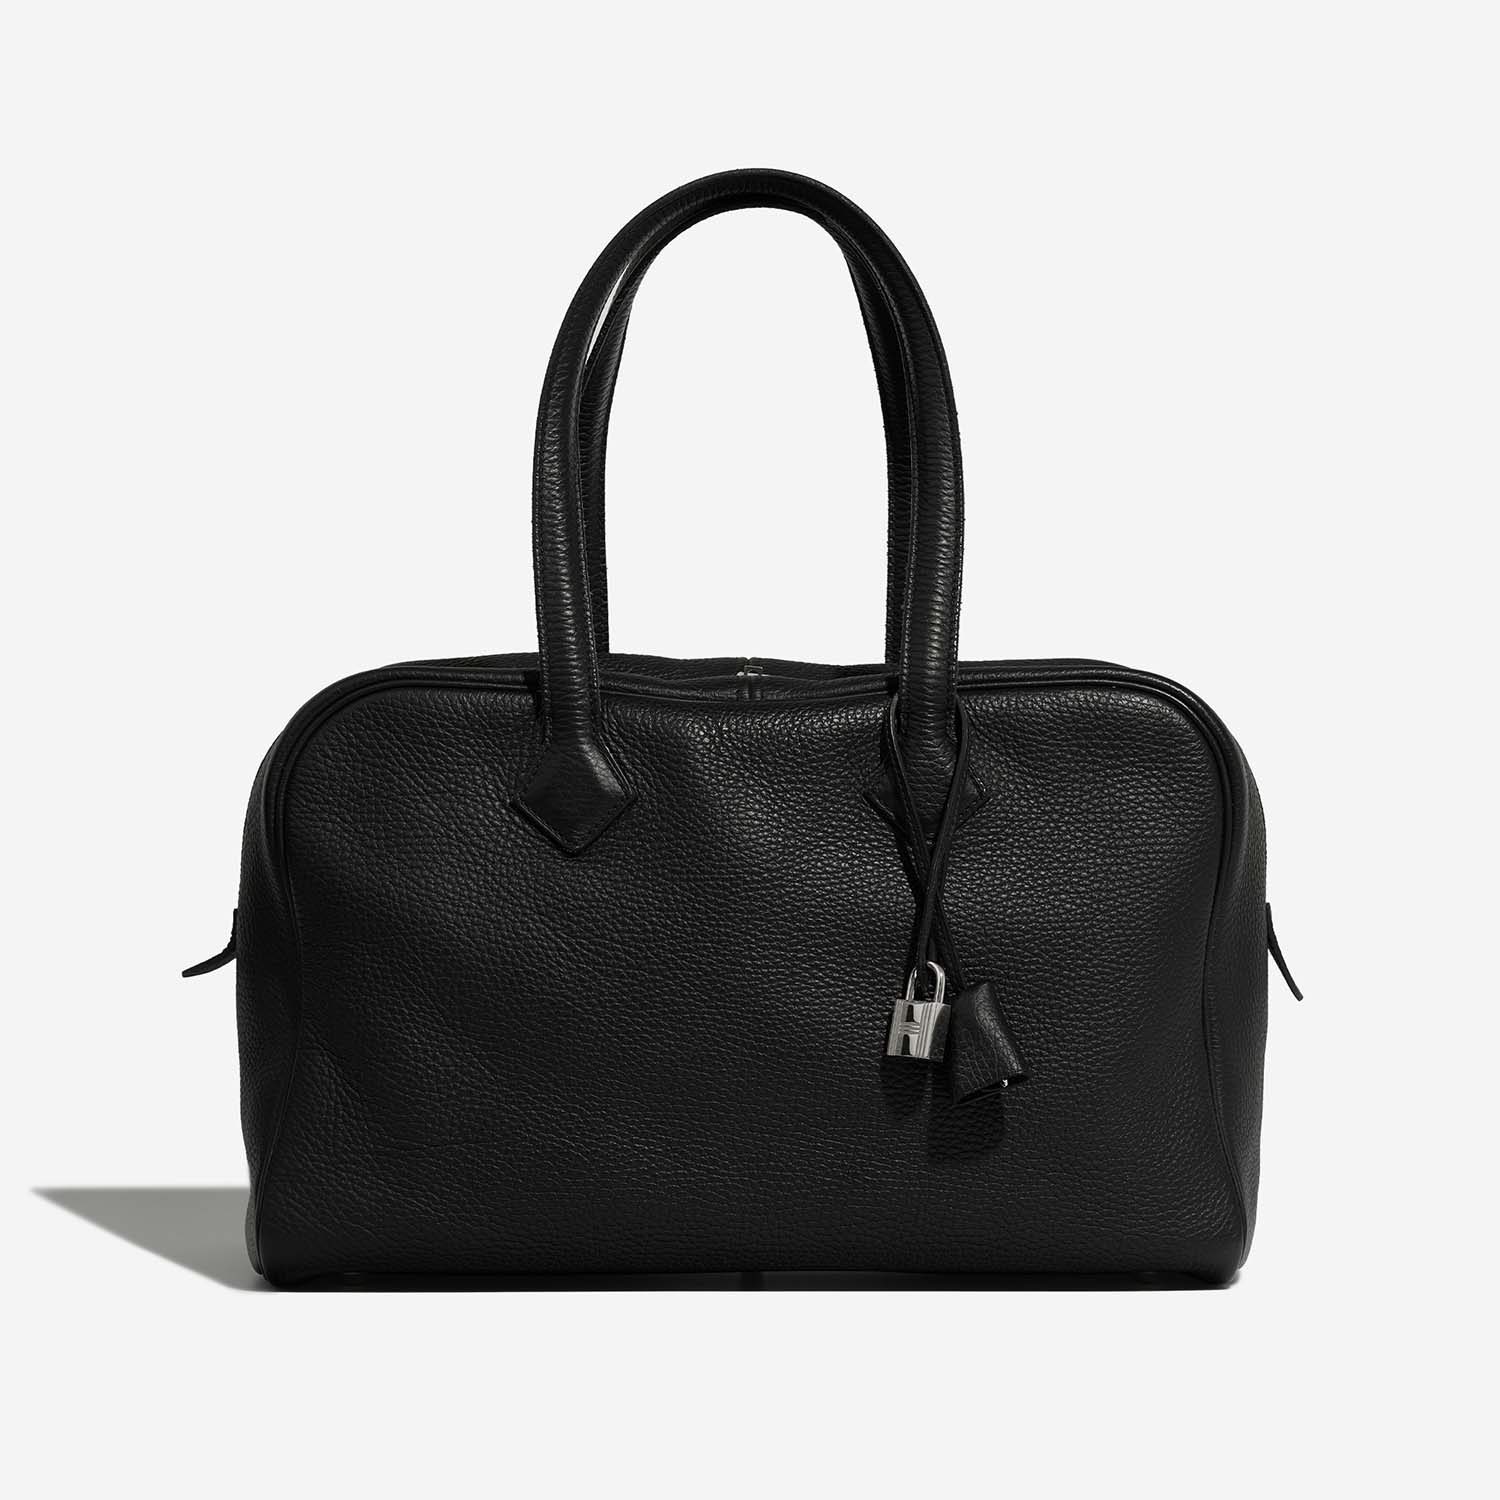 Hermès Victoria 35 Black Front | Verkaufen Sie Ihre Designer-Tasche auf Saclab.com